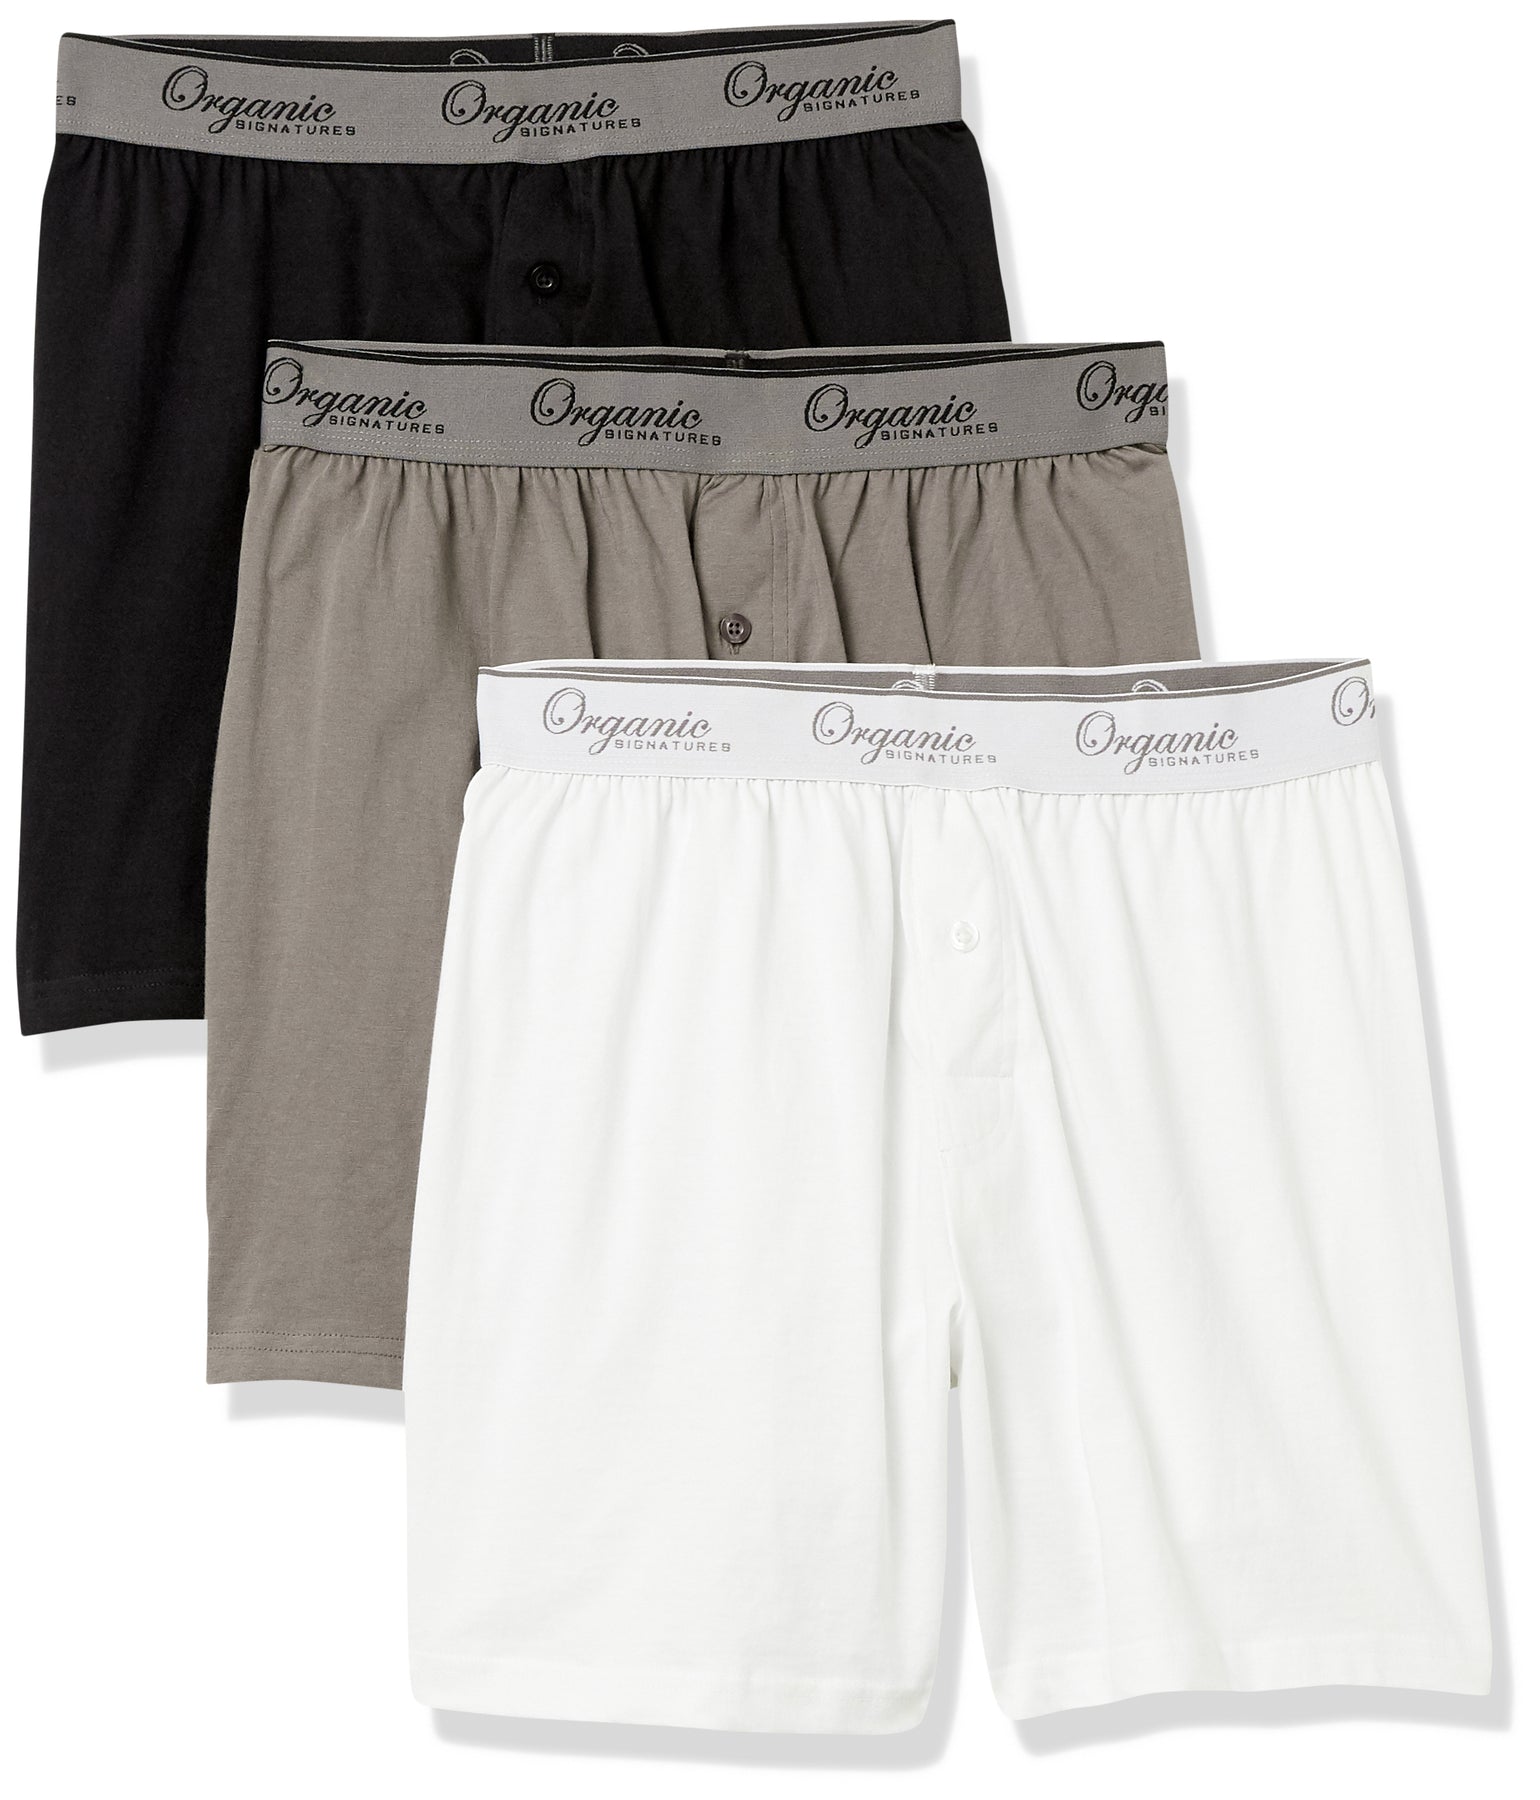 2 Pc Men's Knit Boxer Shorts 100% Cotton Plain Solid Assorted Colors  Underwear